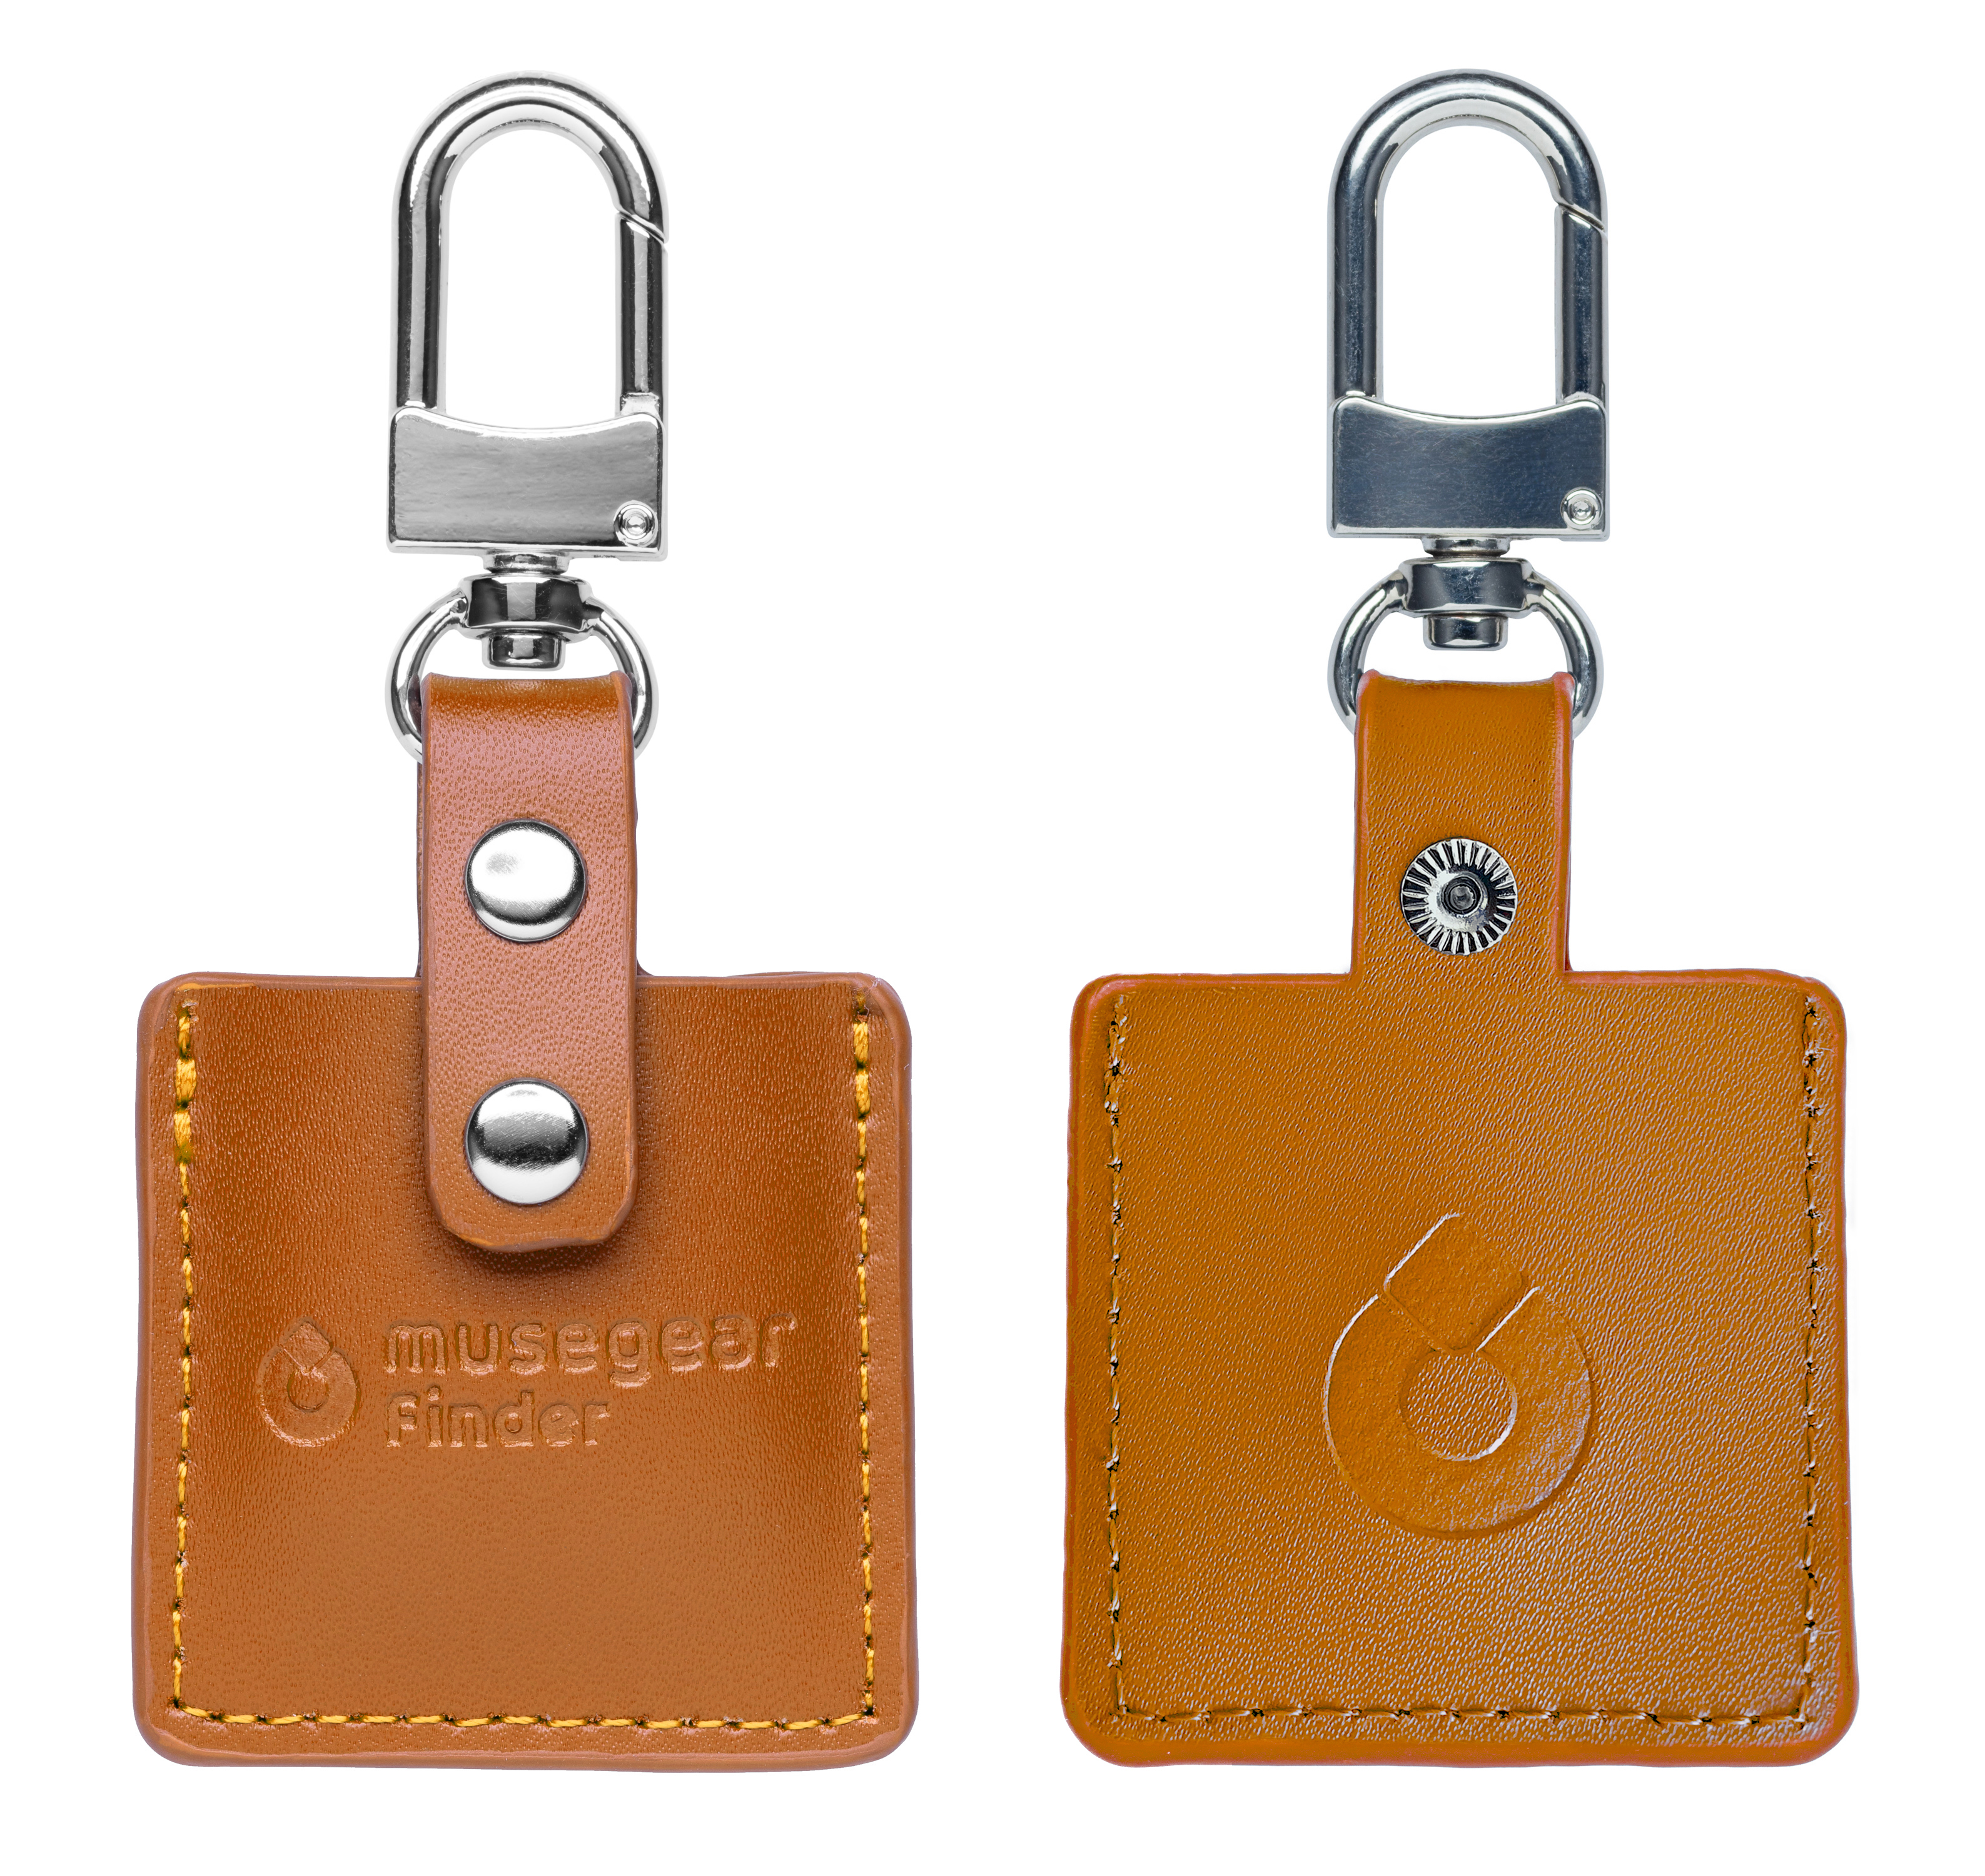 MUSEGEAR Schlüsselfinder mit App aus Bluetooth Deutschland Schlüsselfinder Bluetooth